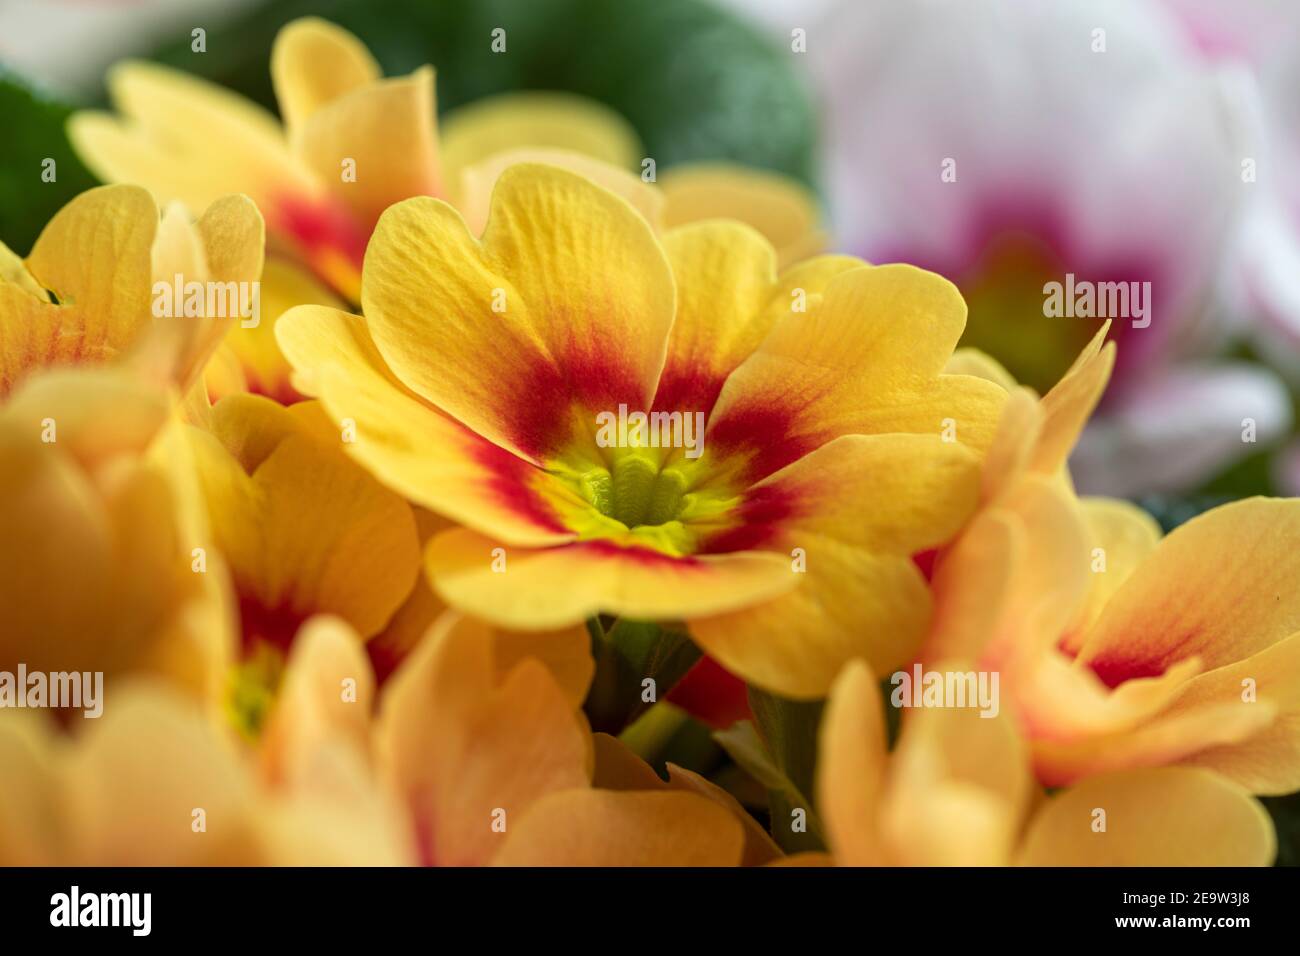 Primo piano della bella Primrose bicolore / Primula vulgaris 'Ringo Star' fioritura in primavera, Regno Unito Foto Stock